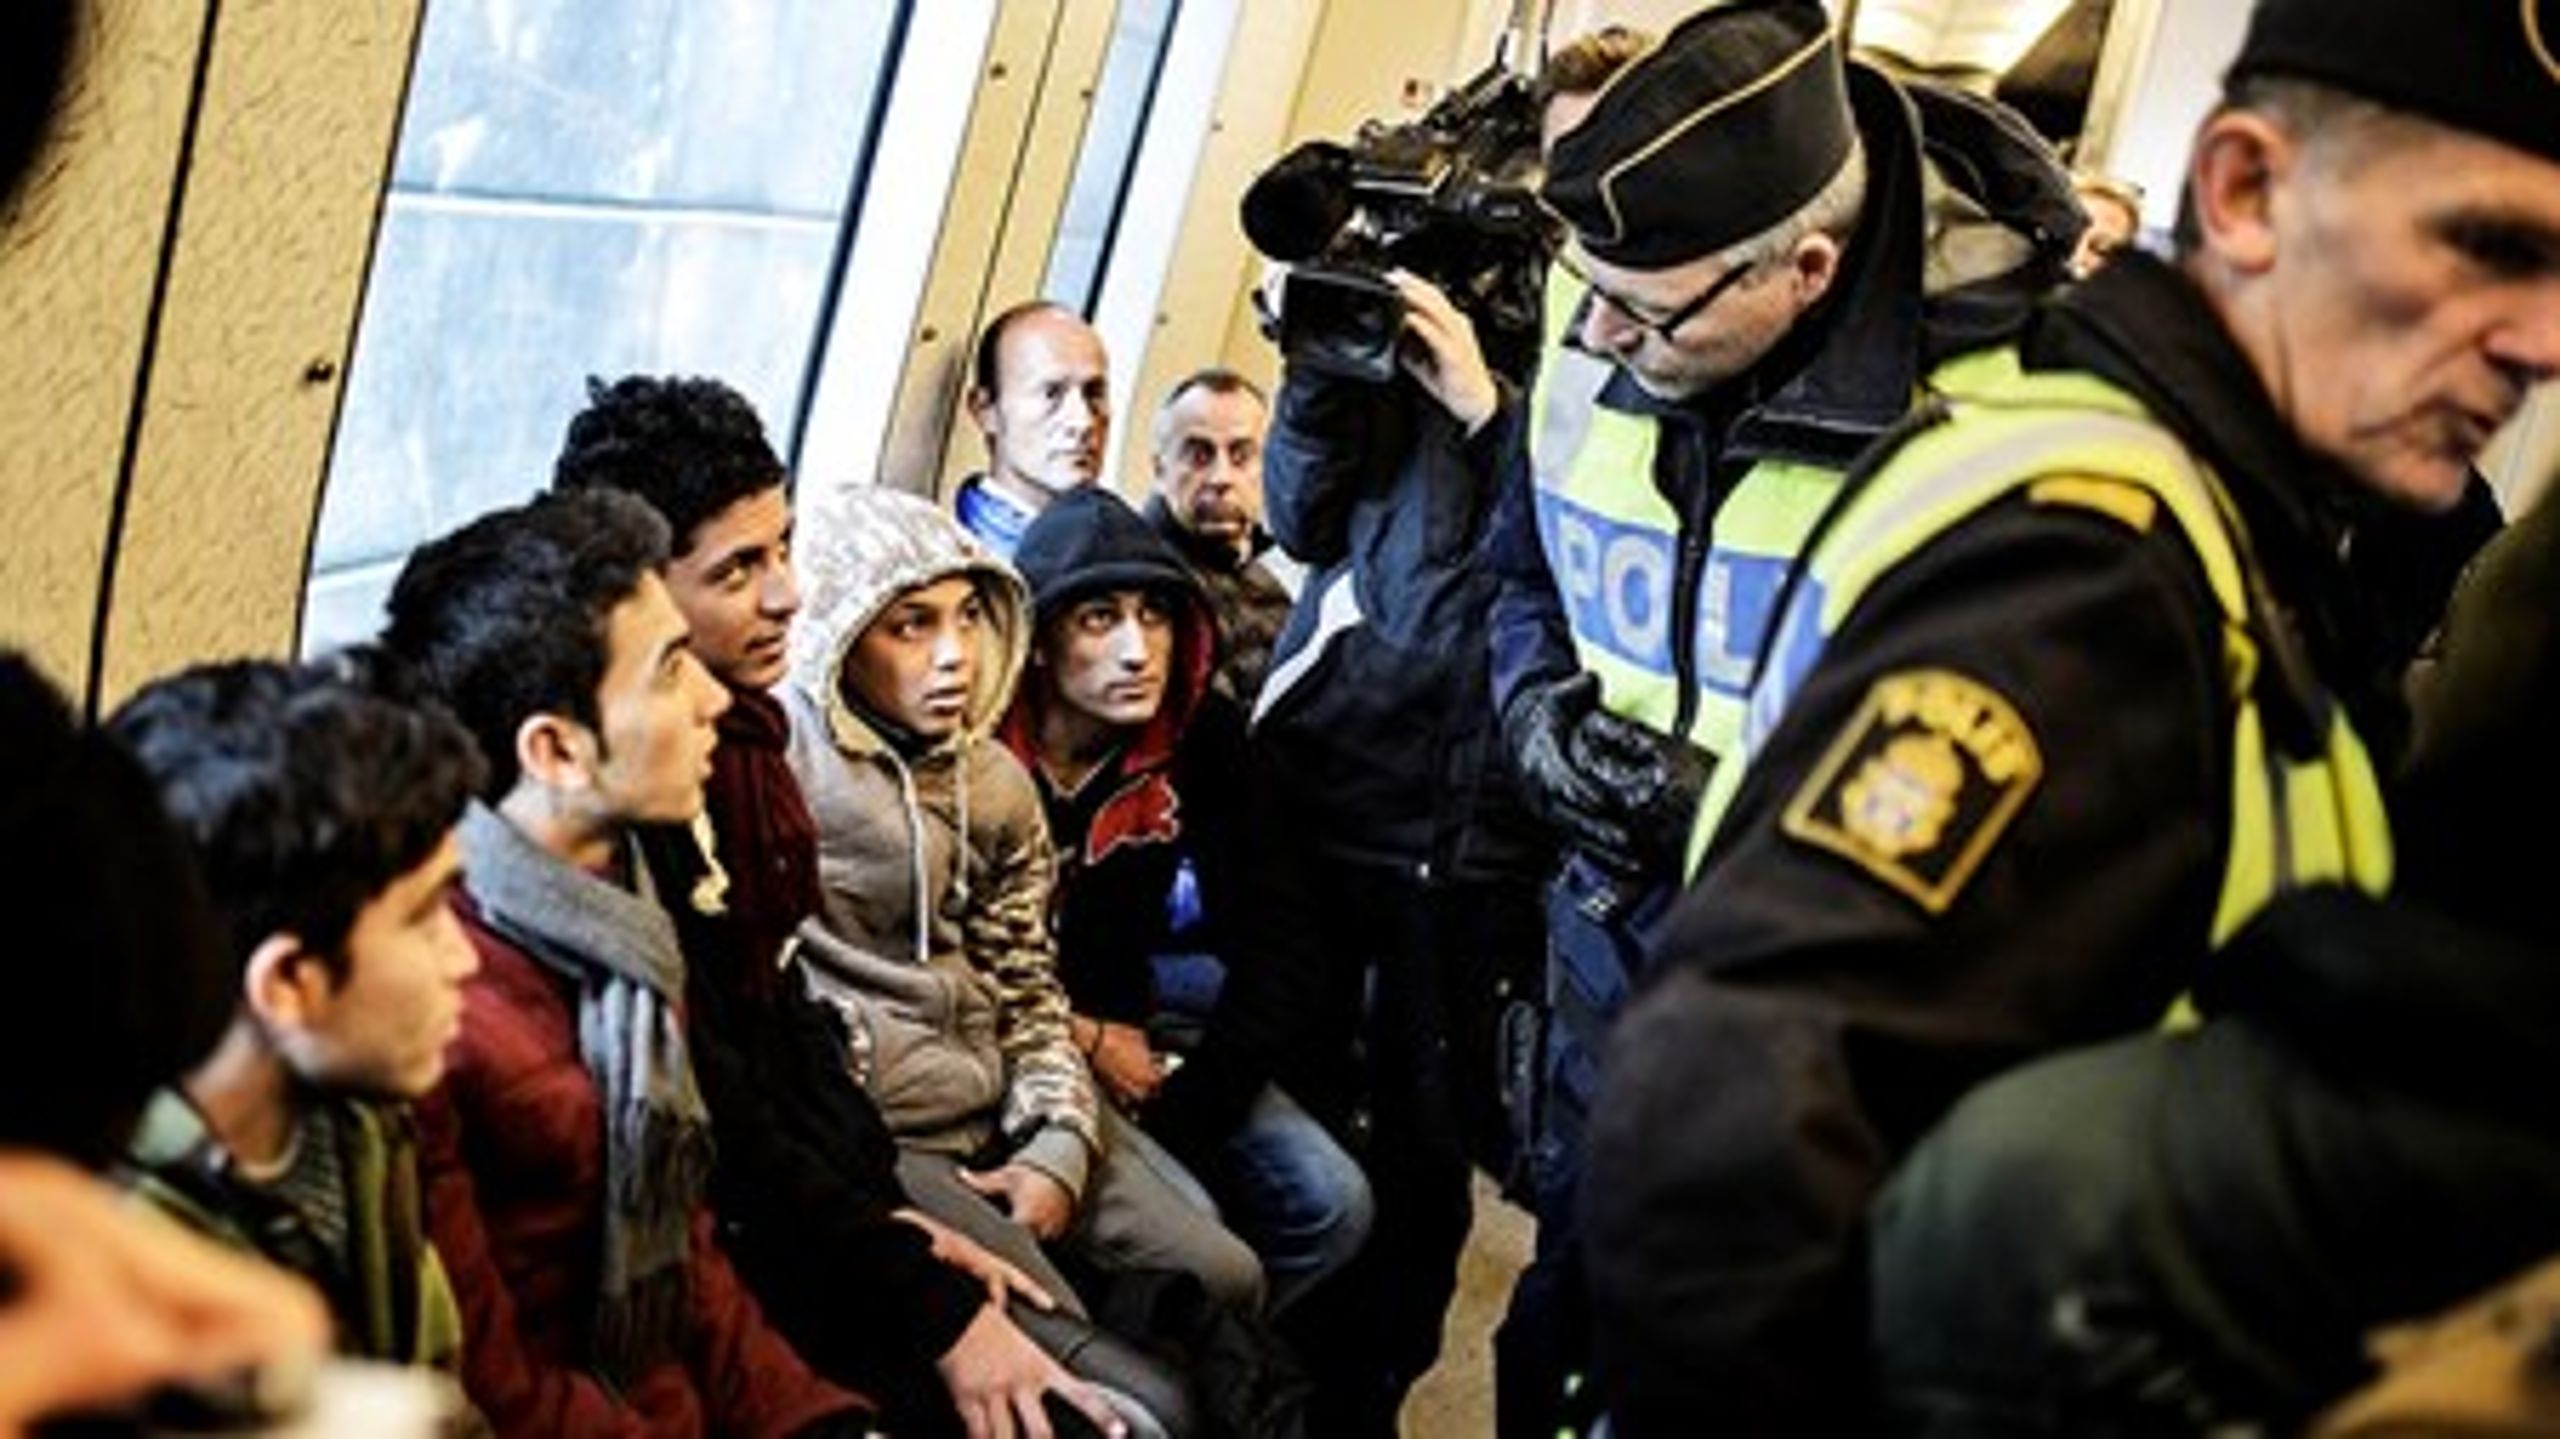 Den svenske regering vil med ID-kontrol på tog, busser og færger kontrollere identiteten på de mennesker, som kommer til Sverige. Transportselskaberne skal selv&nbsp;stå for kontrollen.&nbsp;